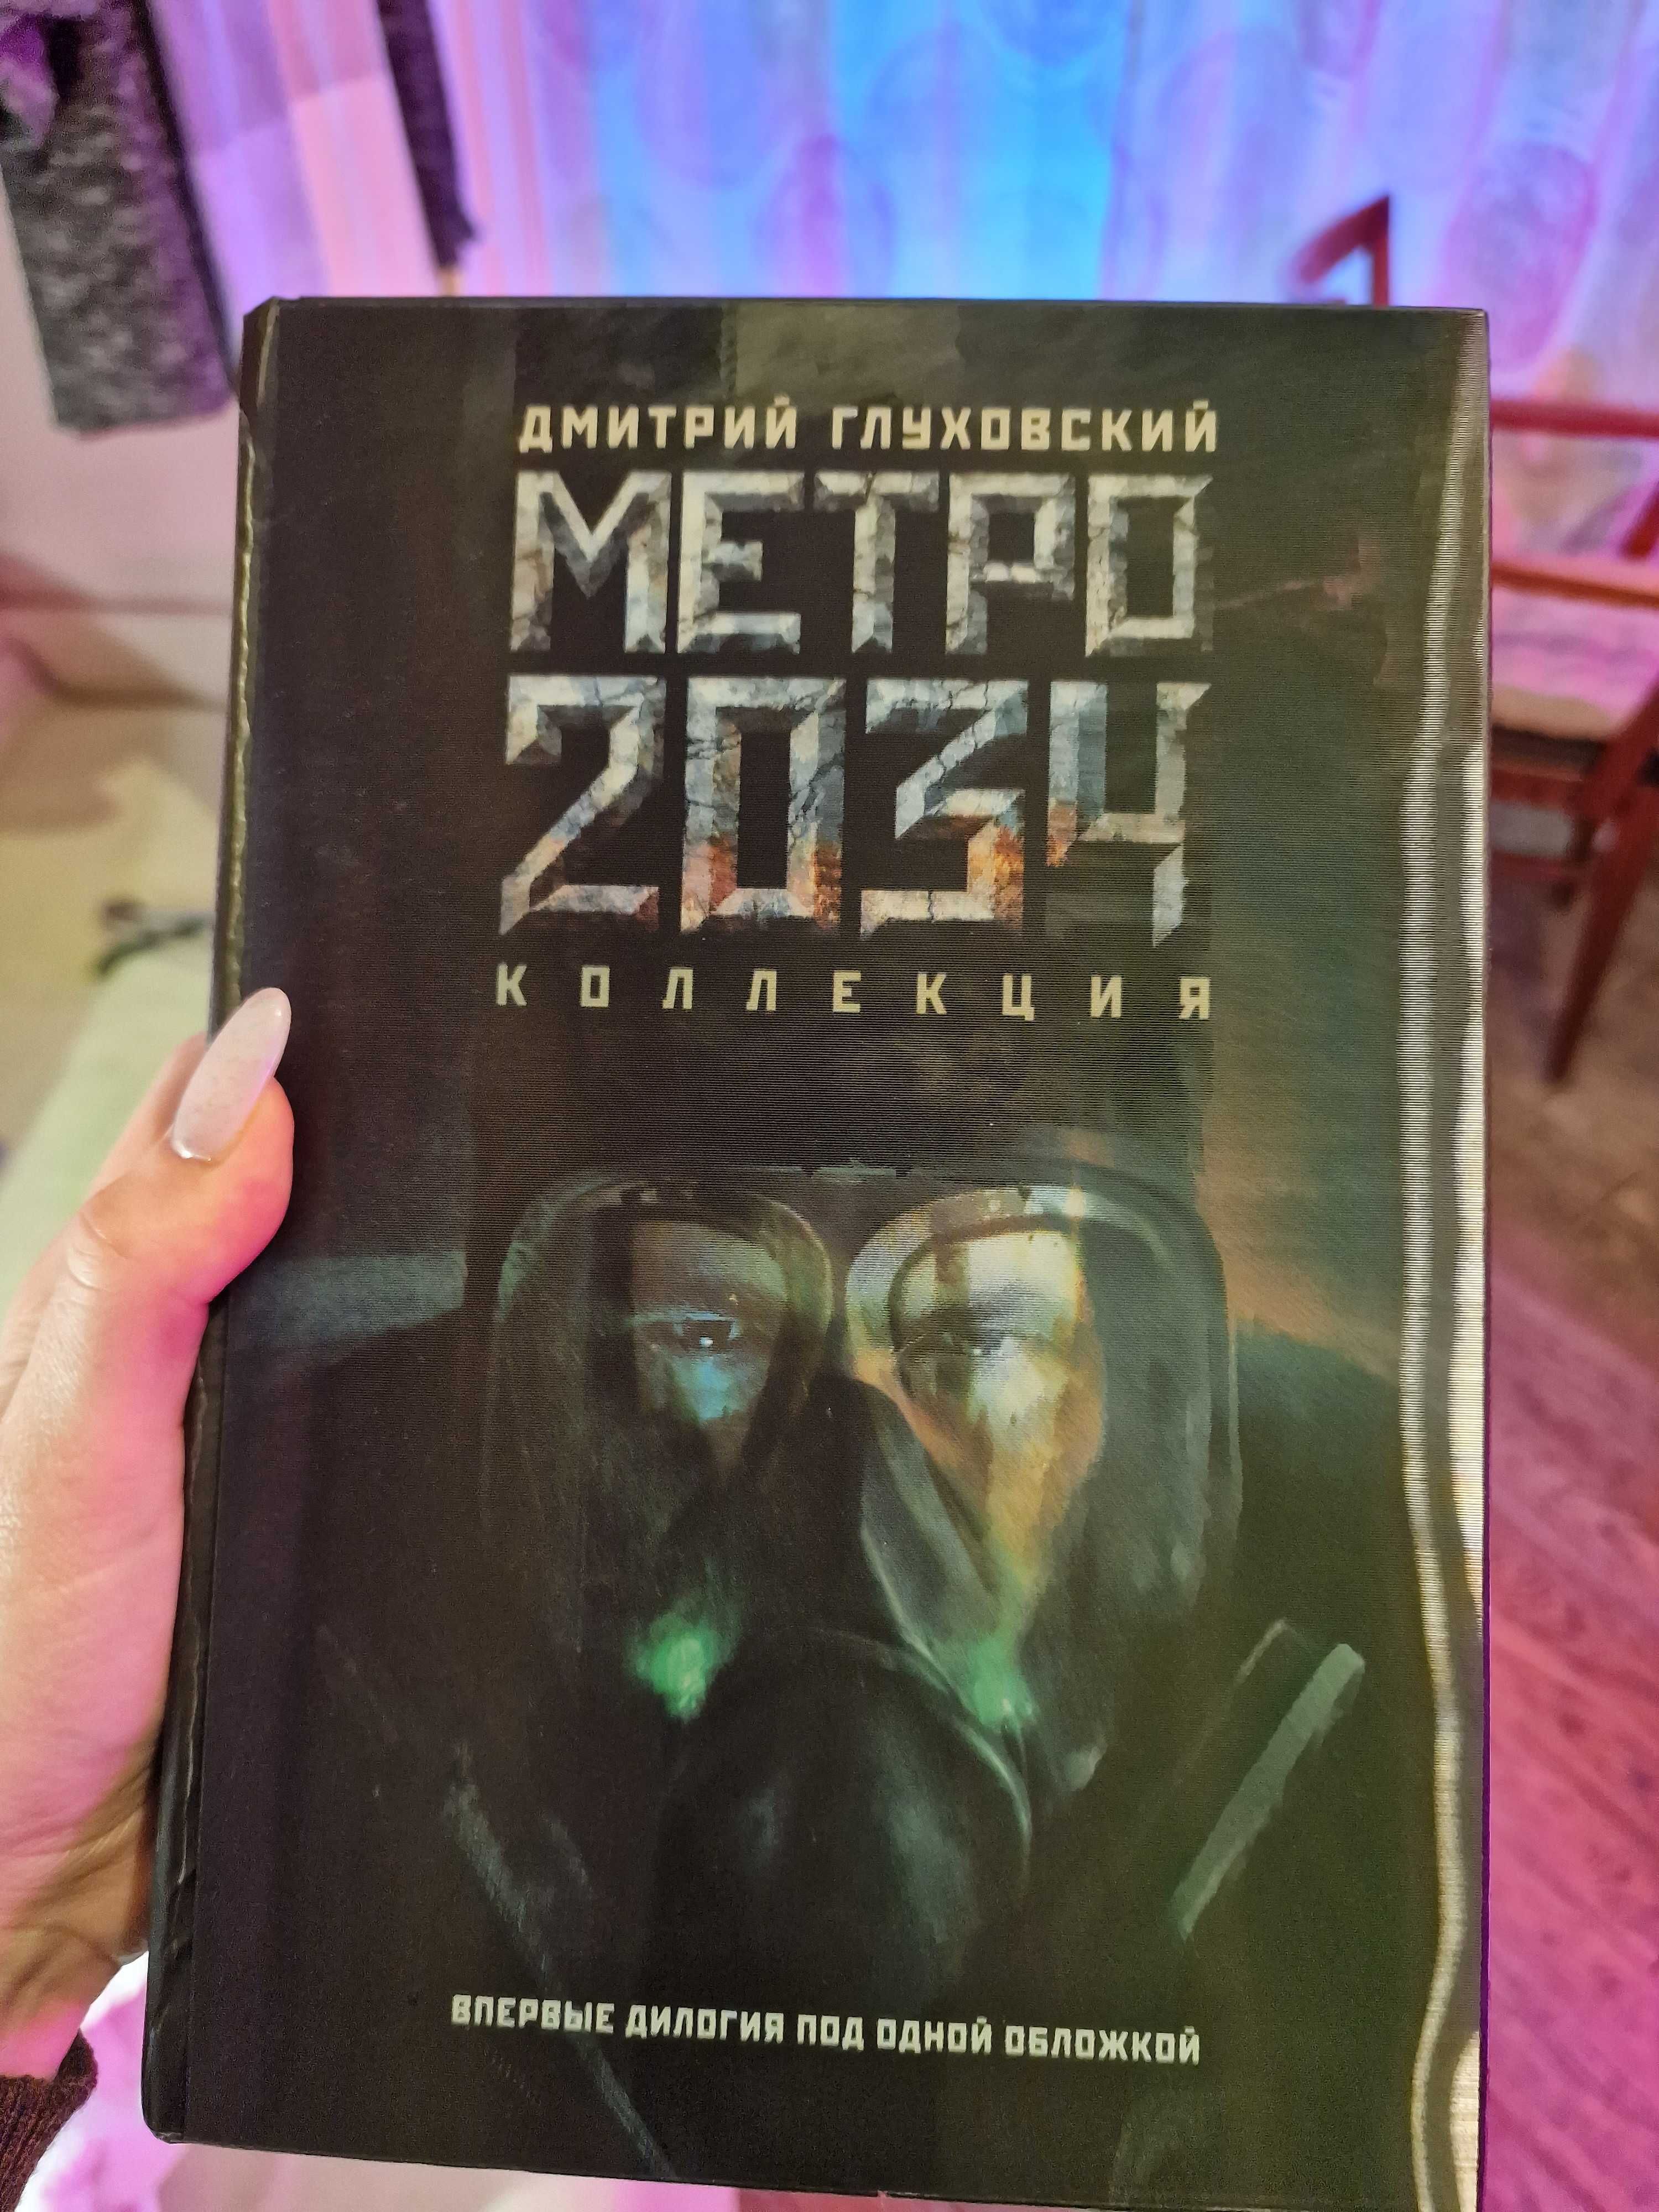 Глуховский Метро 2033/2034 ділогія голографічна суперобкладинка